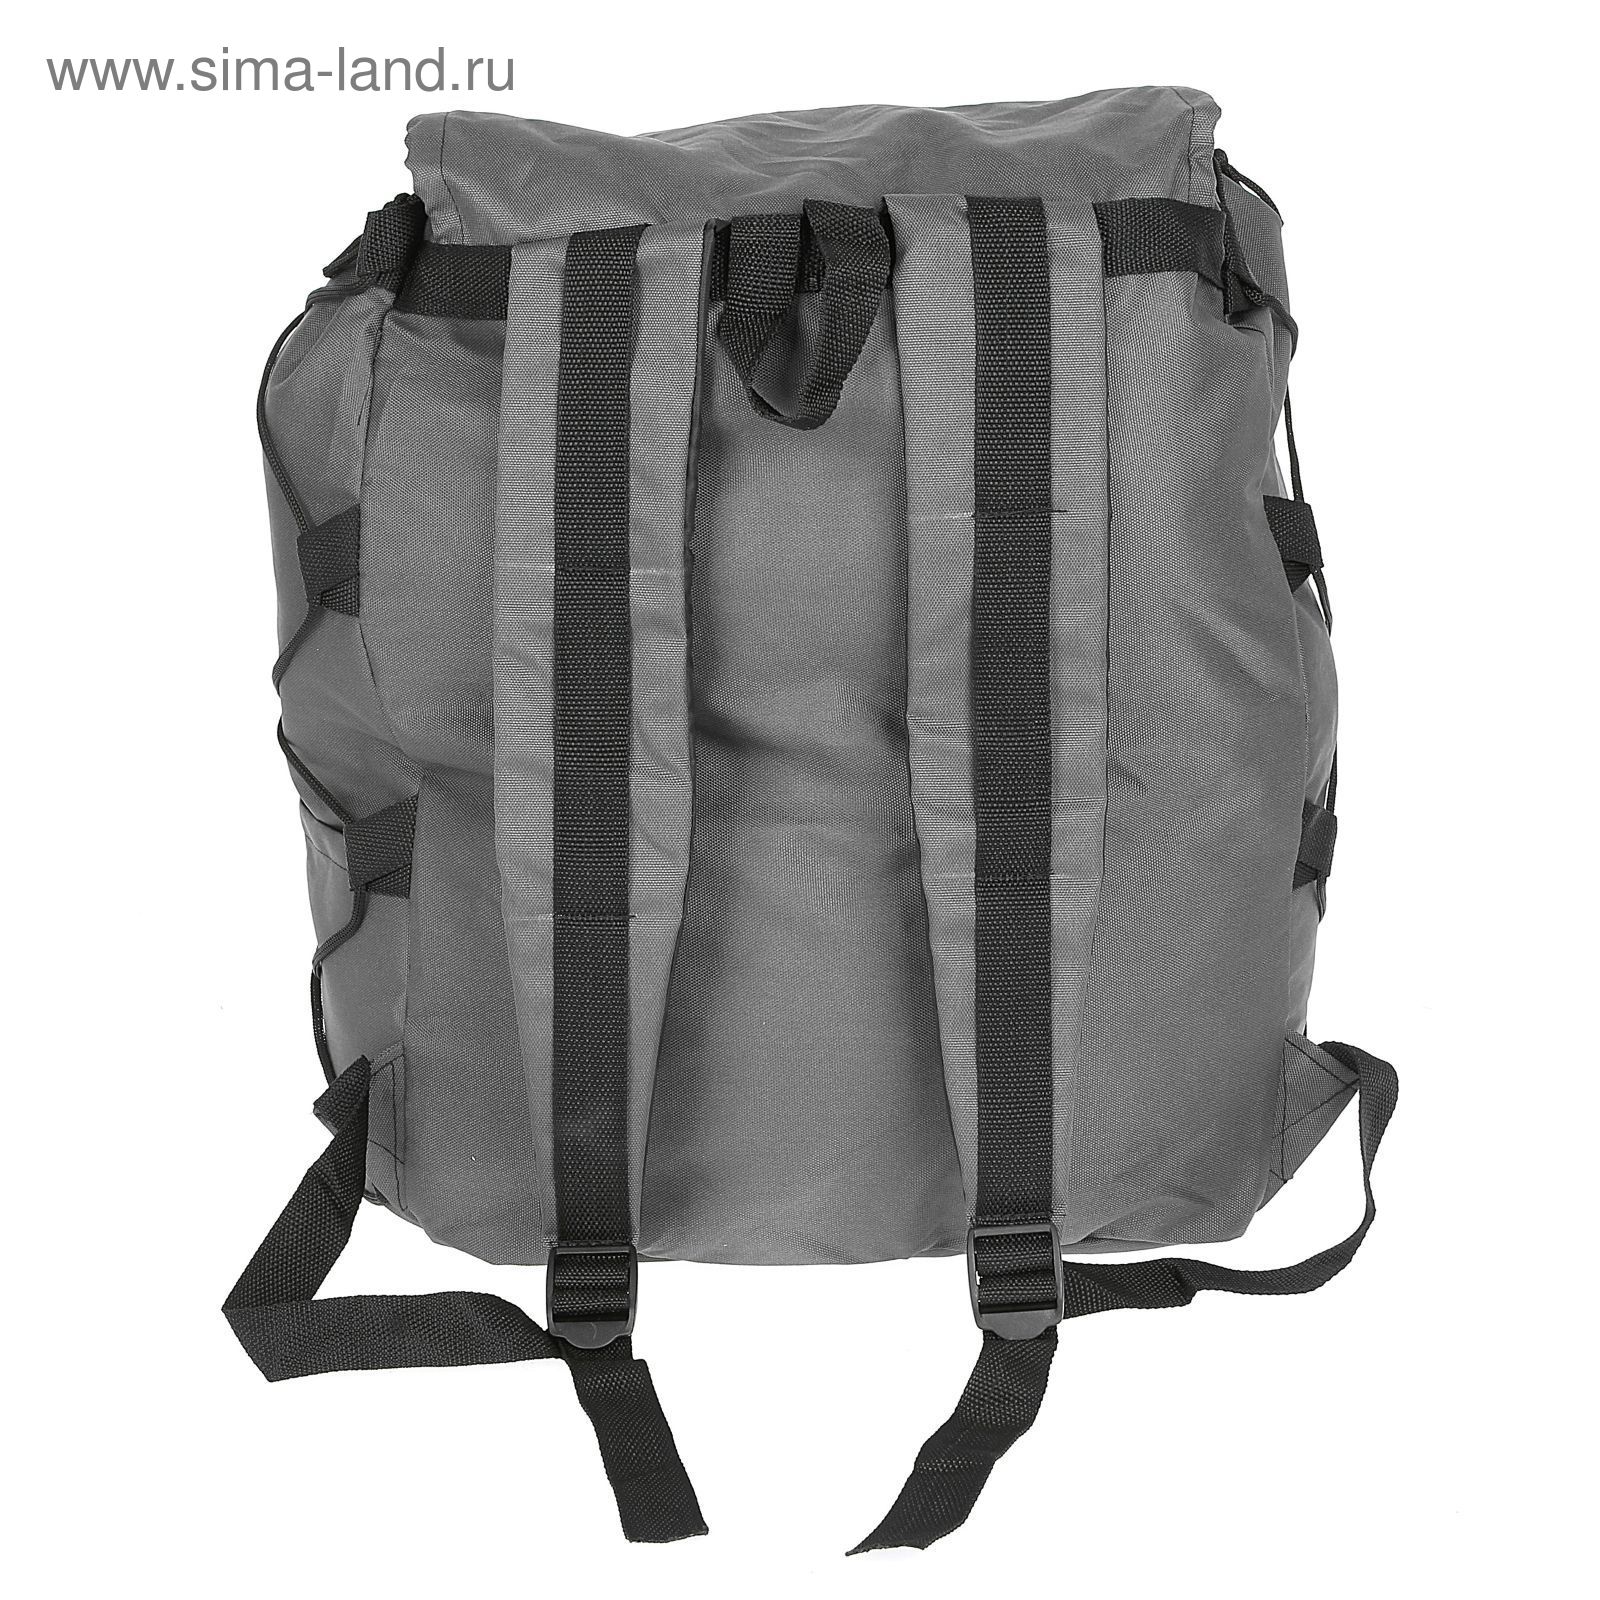 Рюкзак Тип-10, 55 л, цвета МИКС